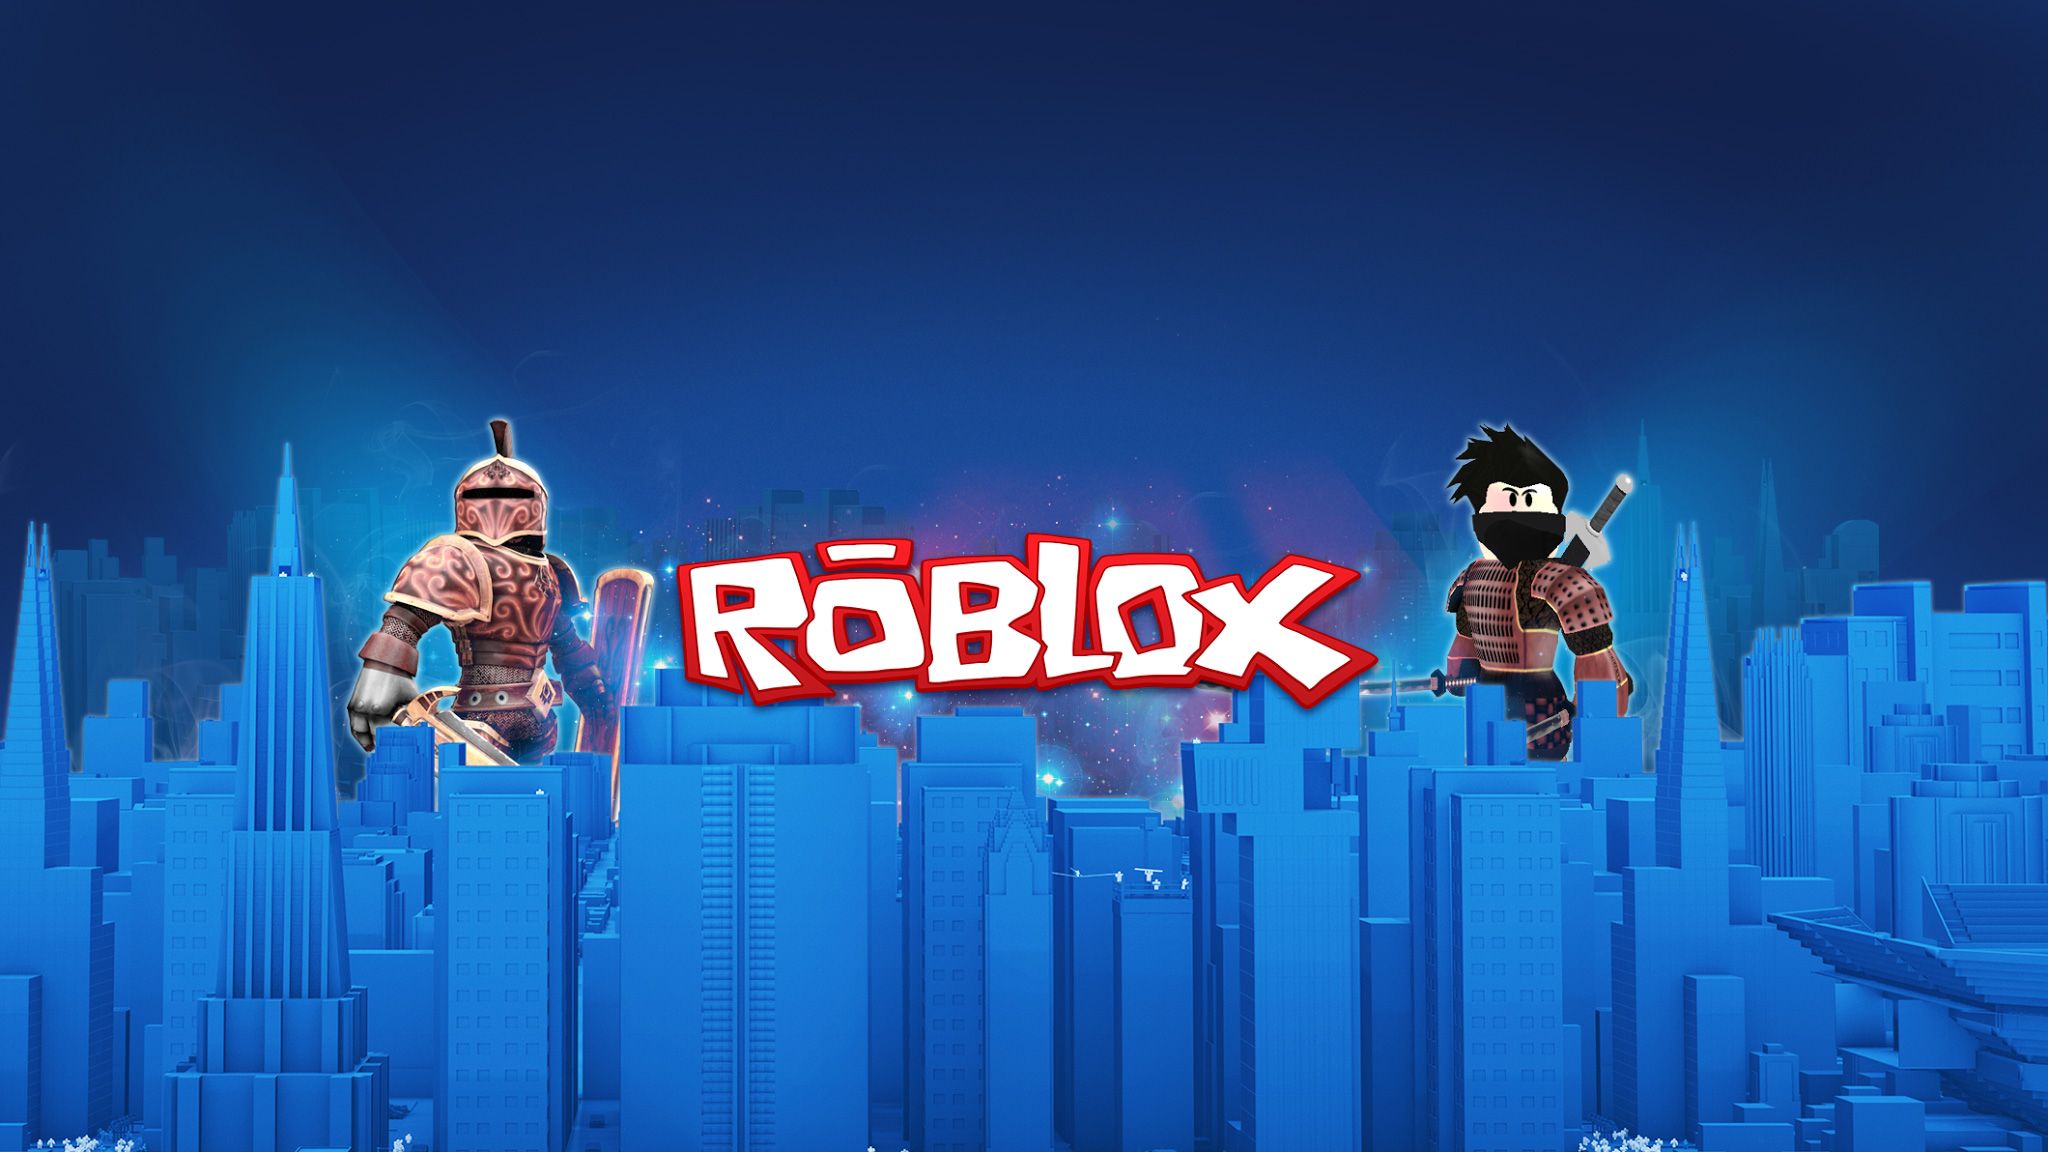 Roblox Live Wallpaper